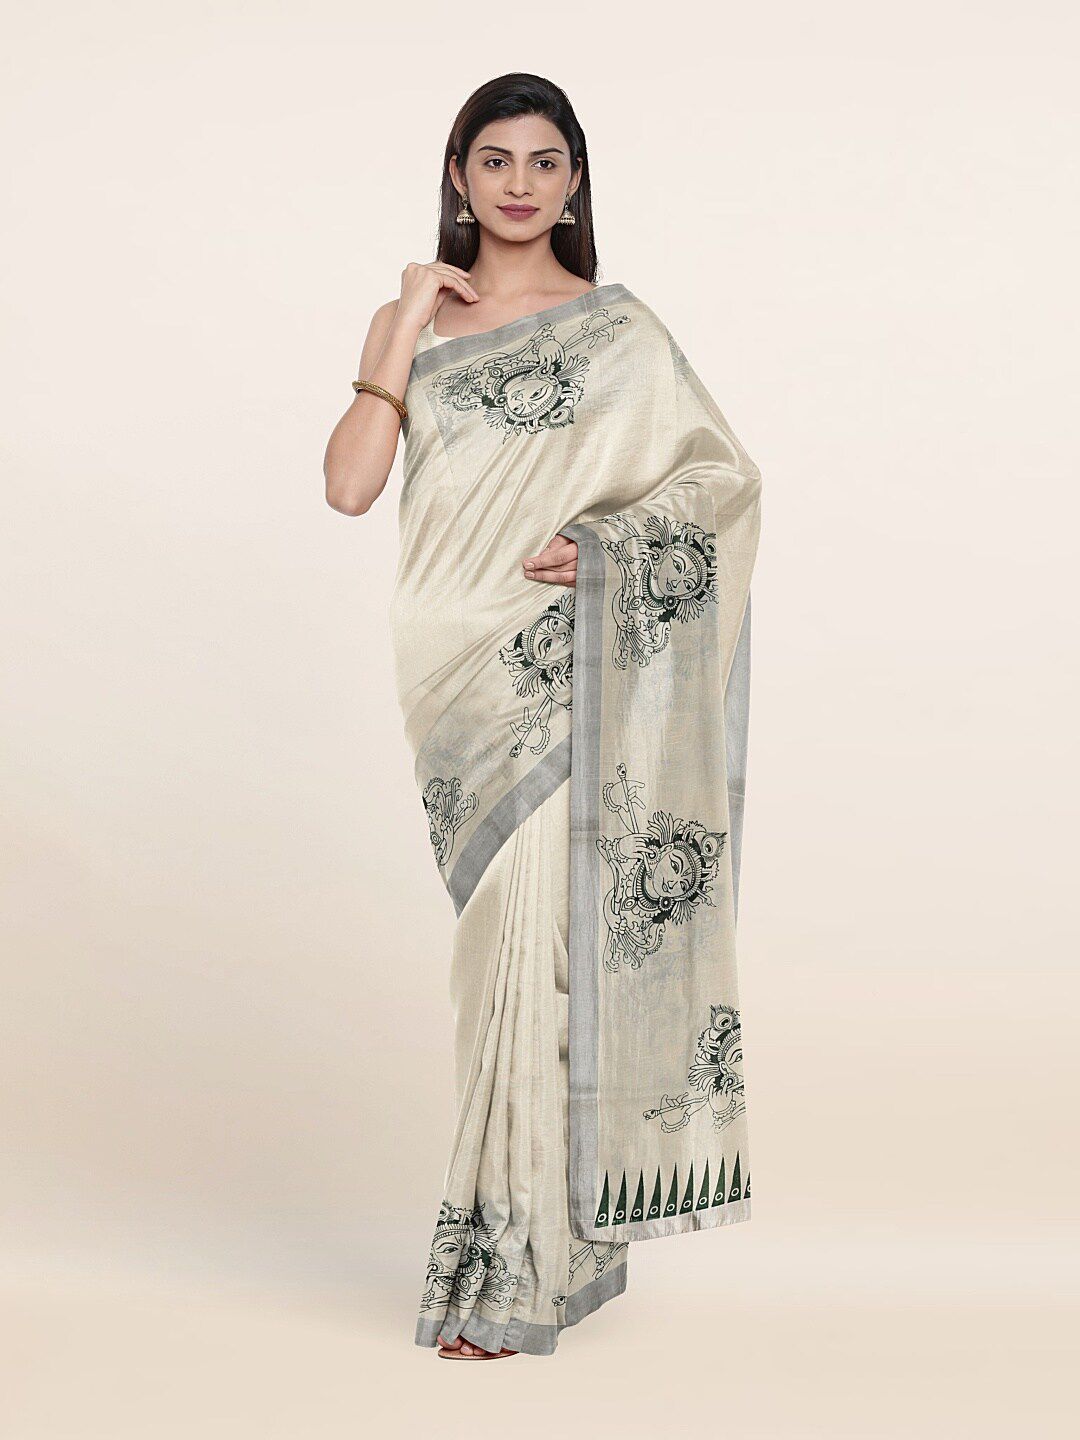 Pothys Off White & Silver-Toned Ethnic Motifs Zari Pure Cotton Saree Price in India